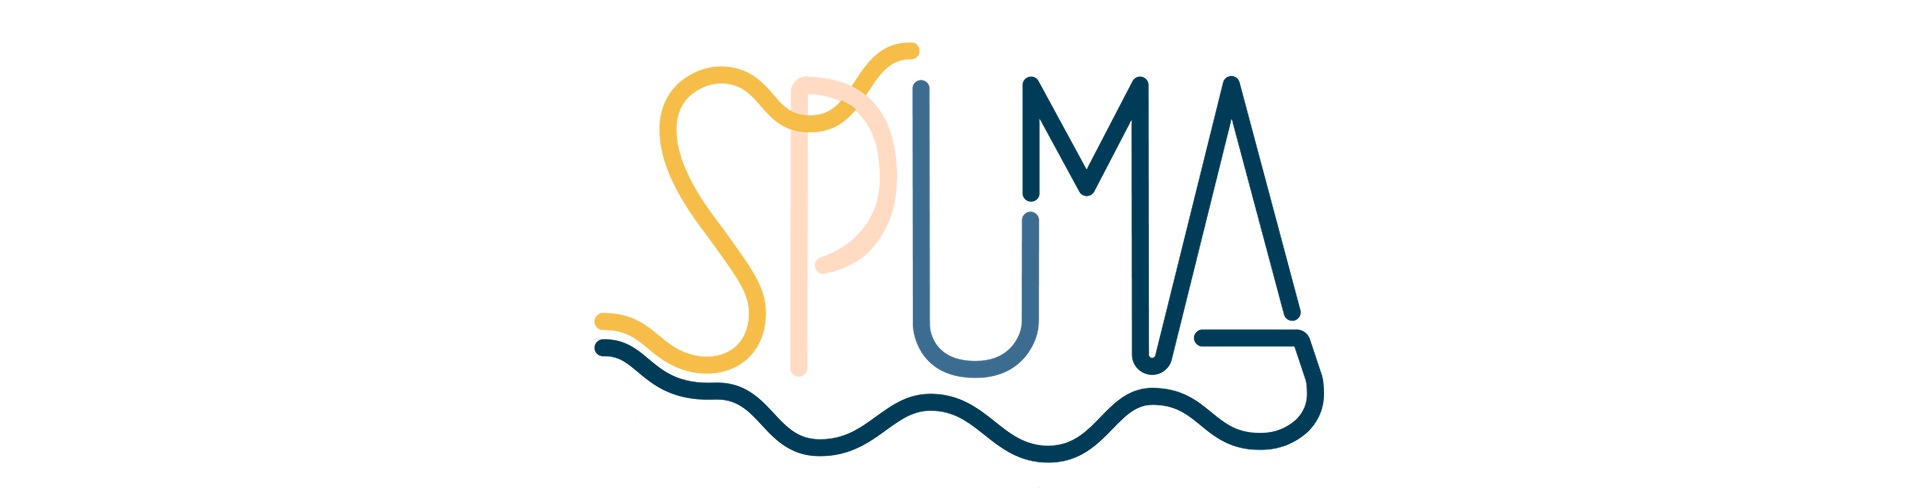 il logo di Spuma, in stampatello con lettere maiuscole, di diversi colori, dal giallo sabbia al blu del mare, con sotto il nome una ondina blu che parte dalla S e si aggancia alla A.